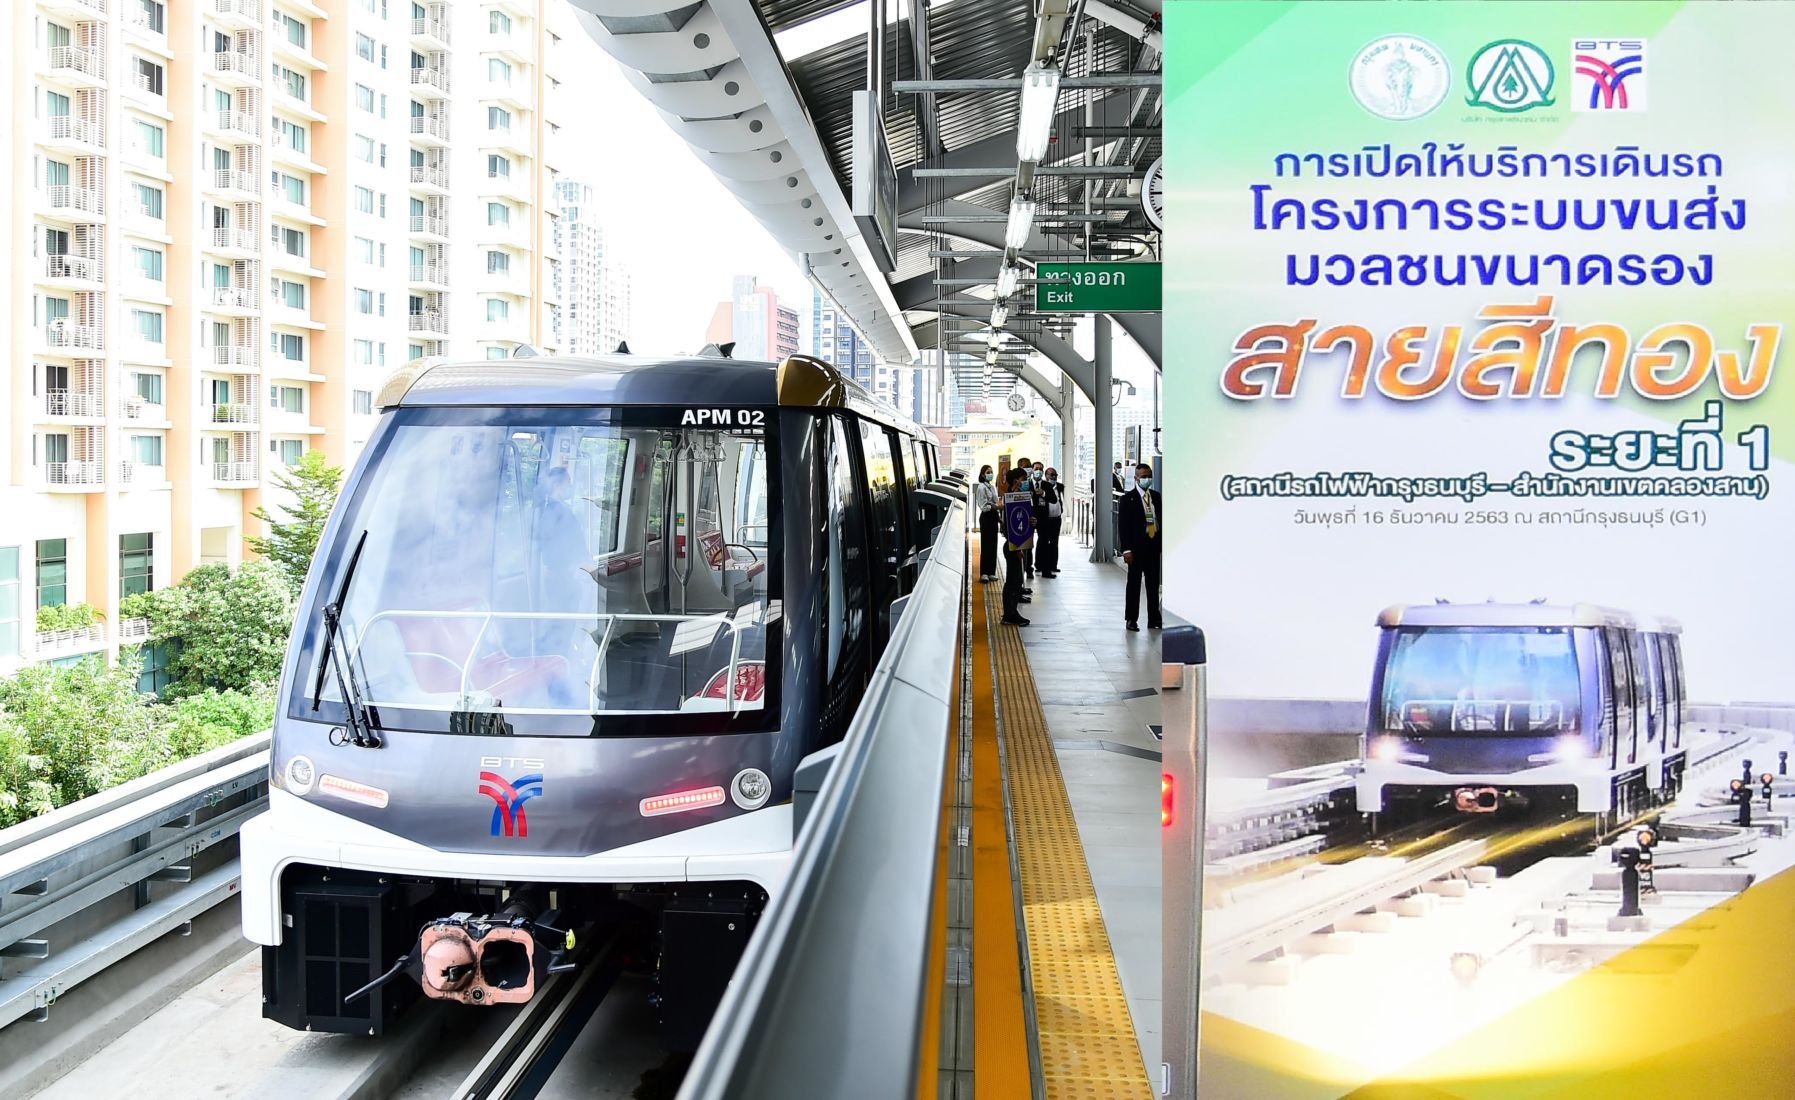 Bts สายสีทอง มีสถานีอะไรบ้าง เชื่อมต่อจุดไหน ราคาเท่าไหร่ | The Thaiger  ข่าวไทย